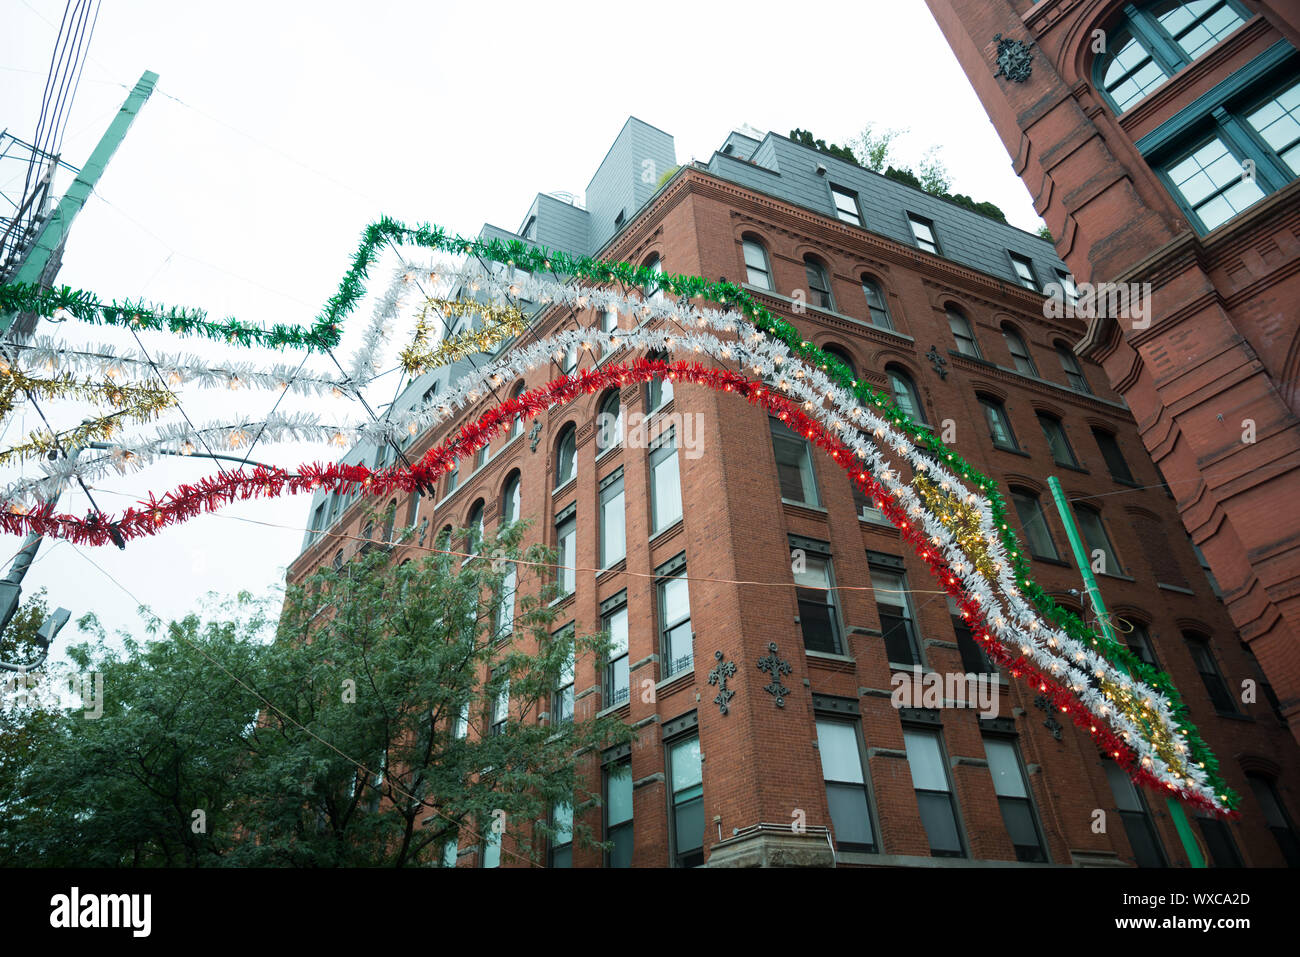 La fête de San Gennaro un célèbre festival italien dans la petite Italie, près de Chinatown, New York. Inscrivez-vous en vert blanc et rouge. Banque D'Images